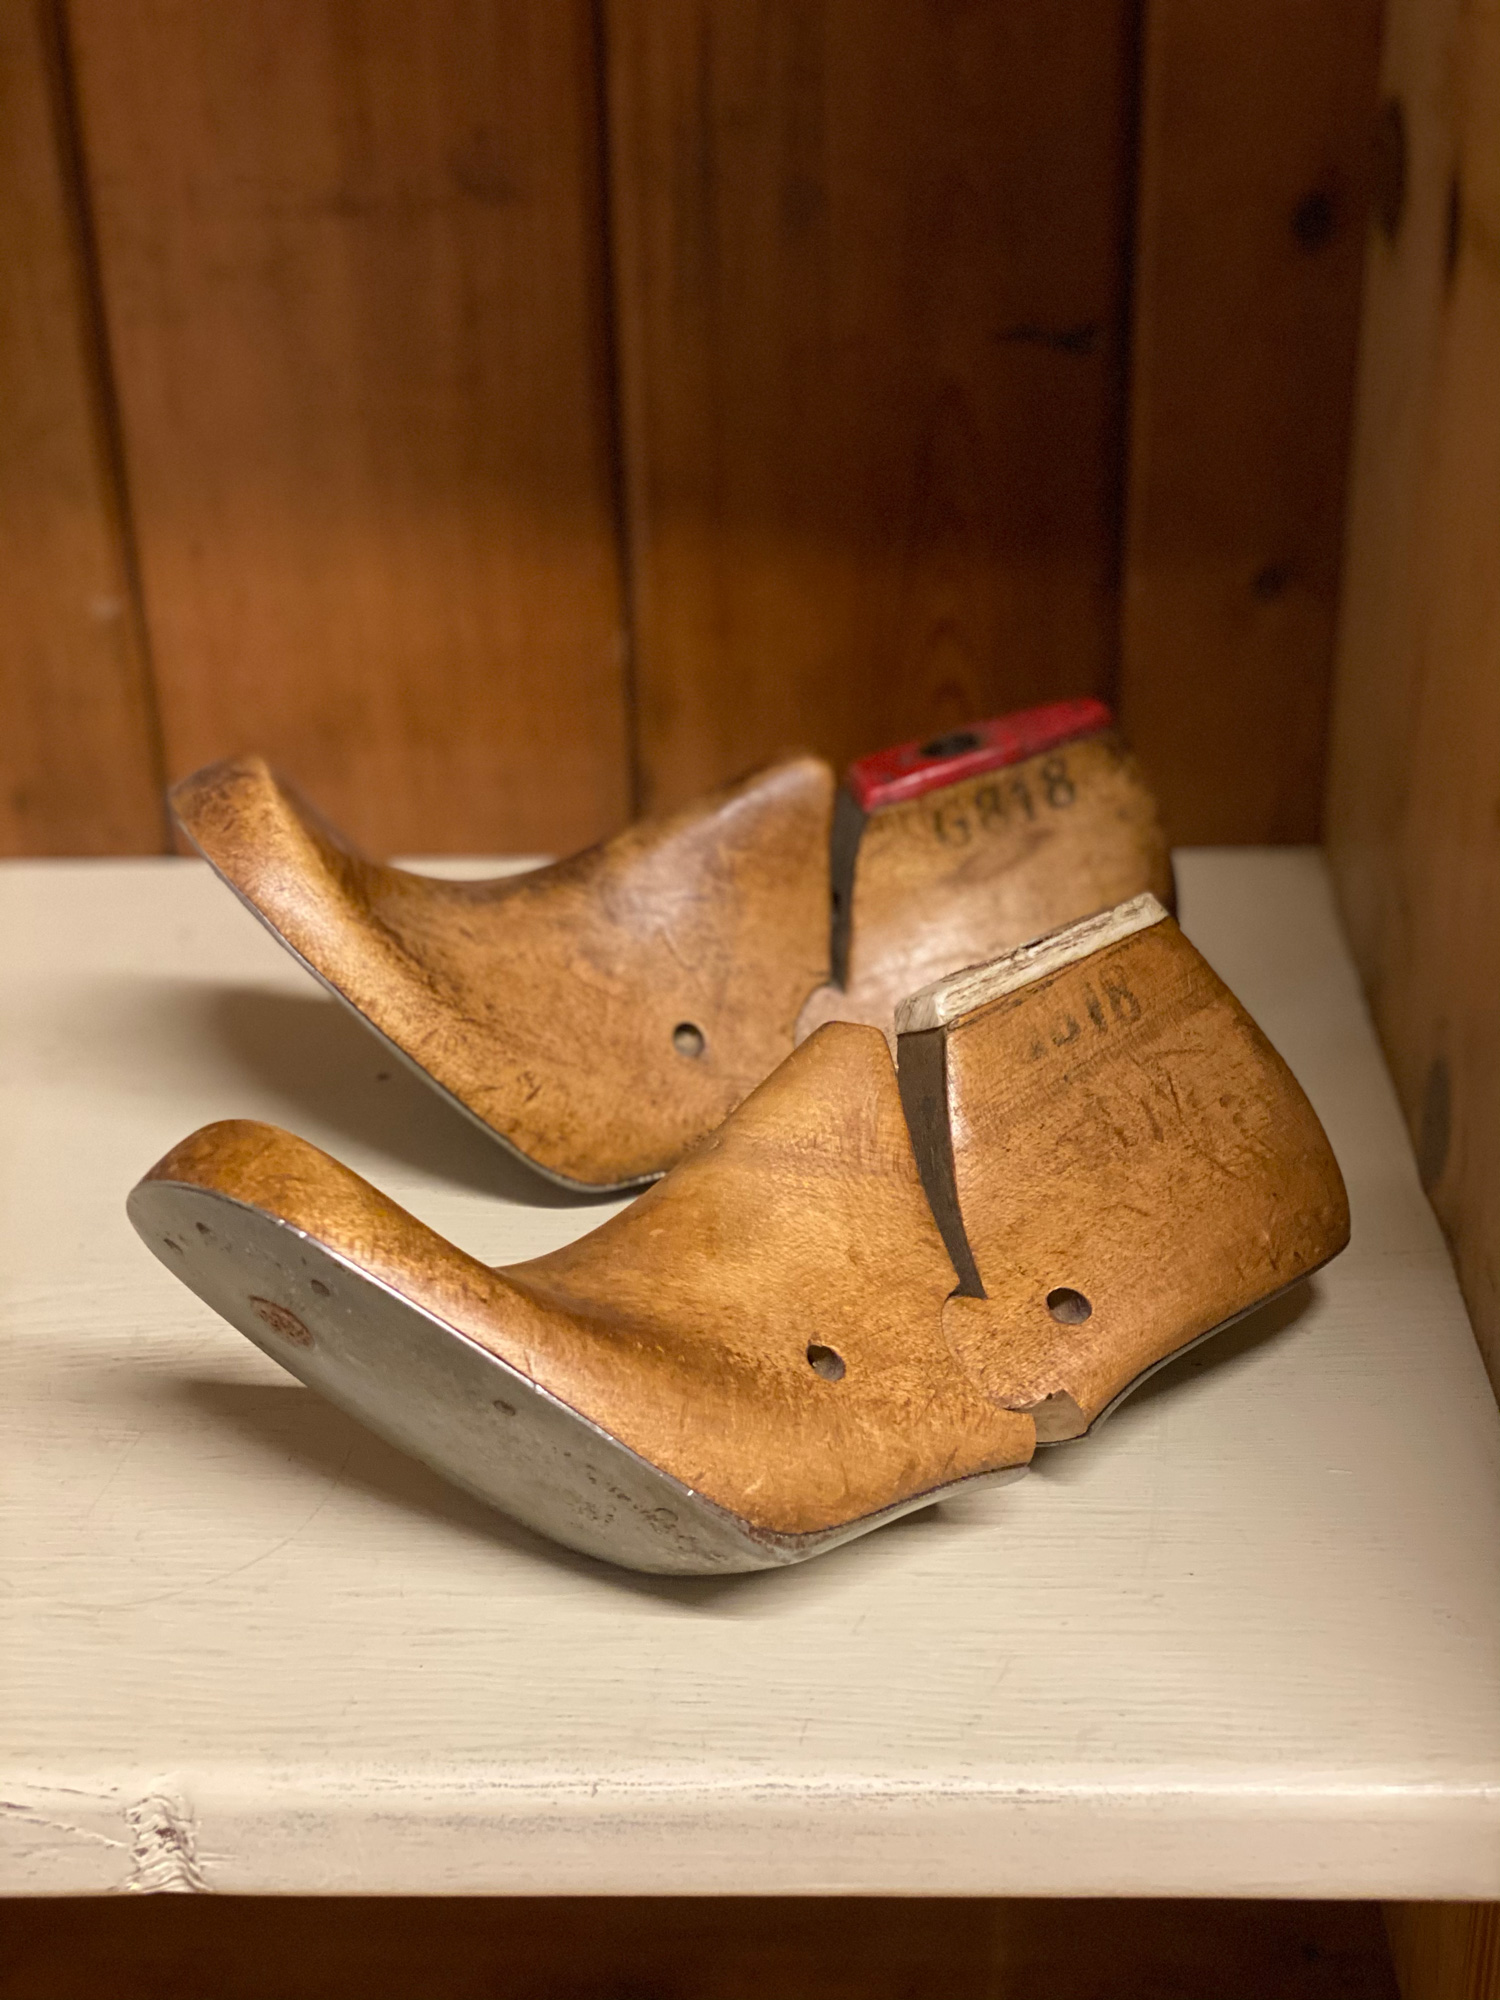 Wooden shoe lasts